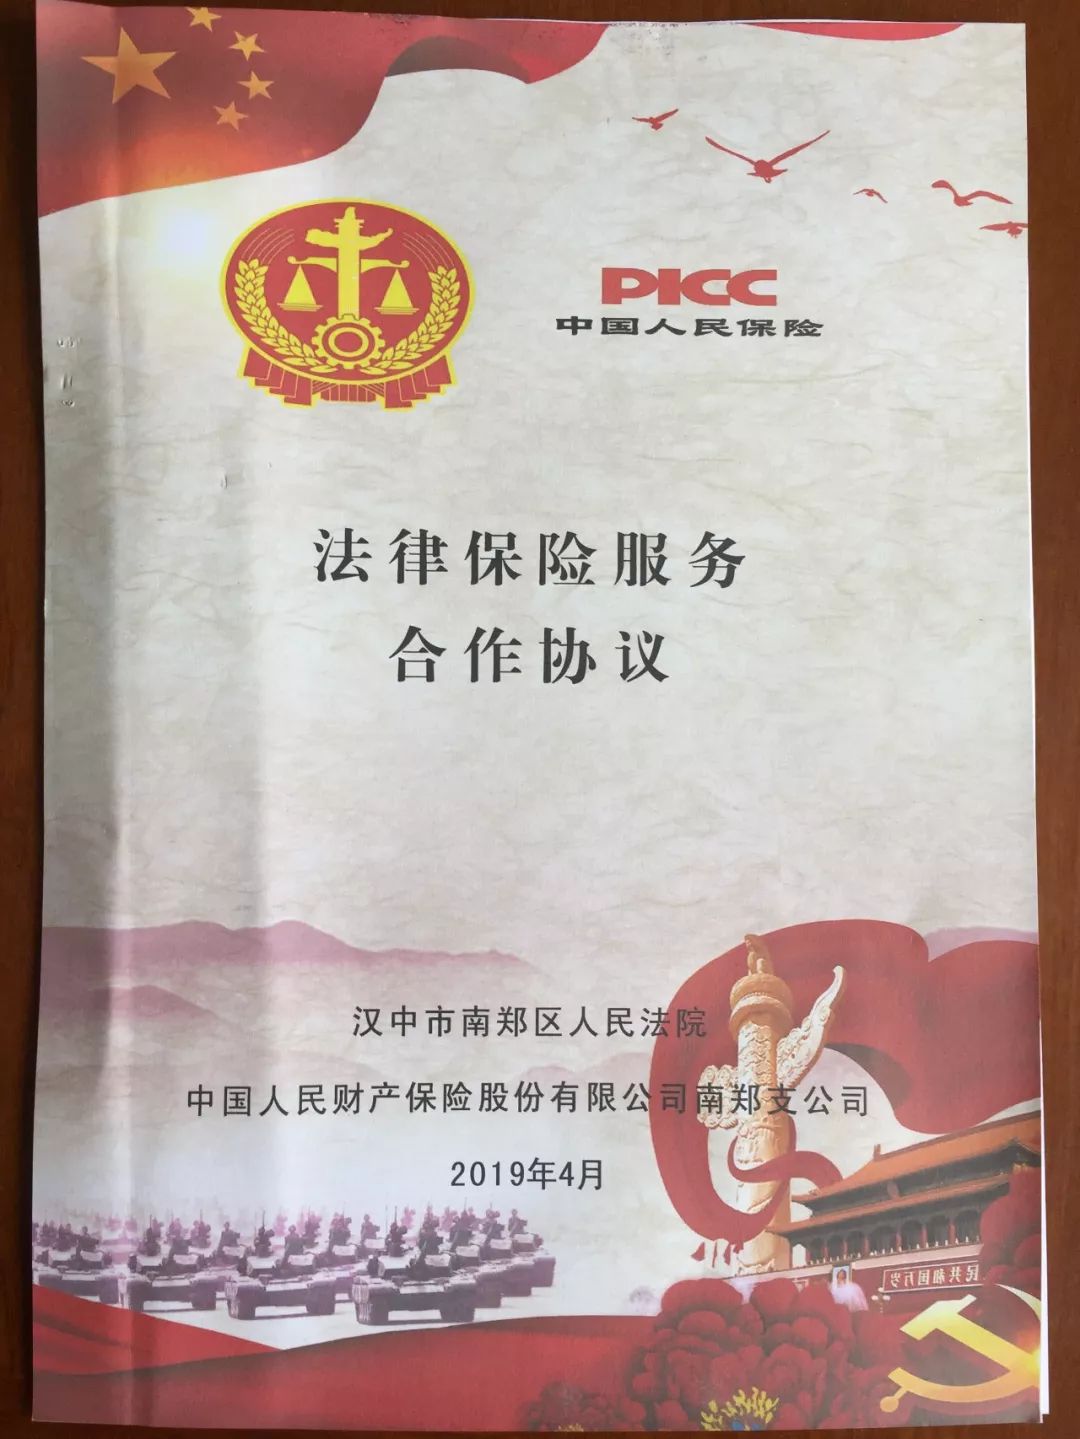 南郑区人民法院与人保财险南郑支公司举行 执行 保险 服务签约仪式